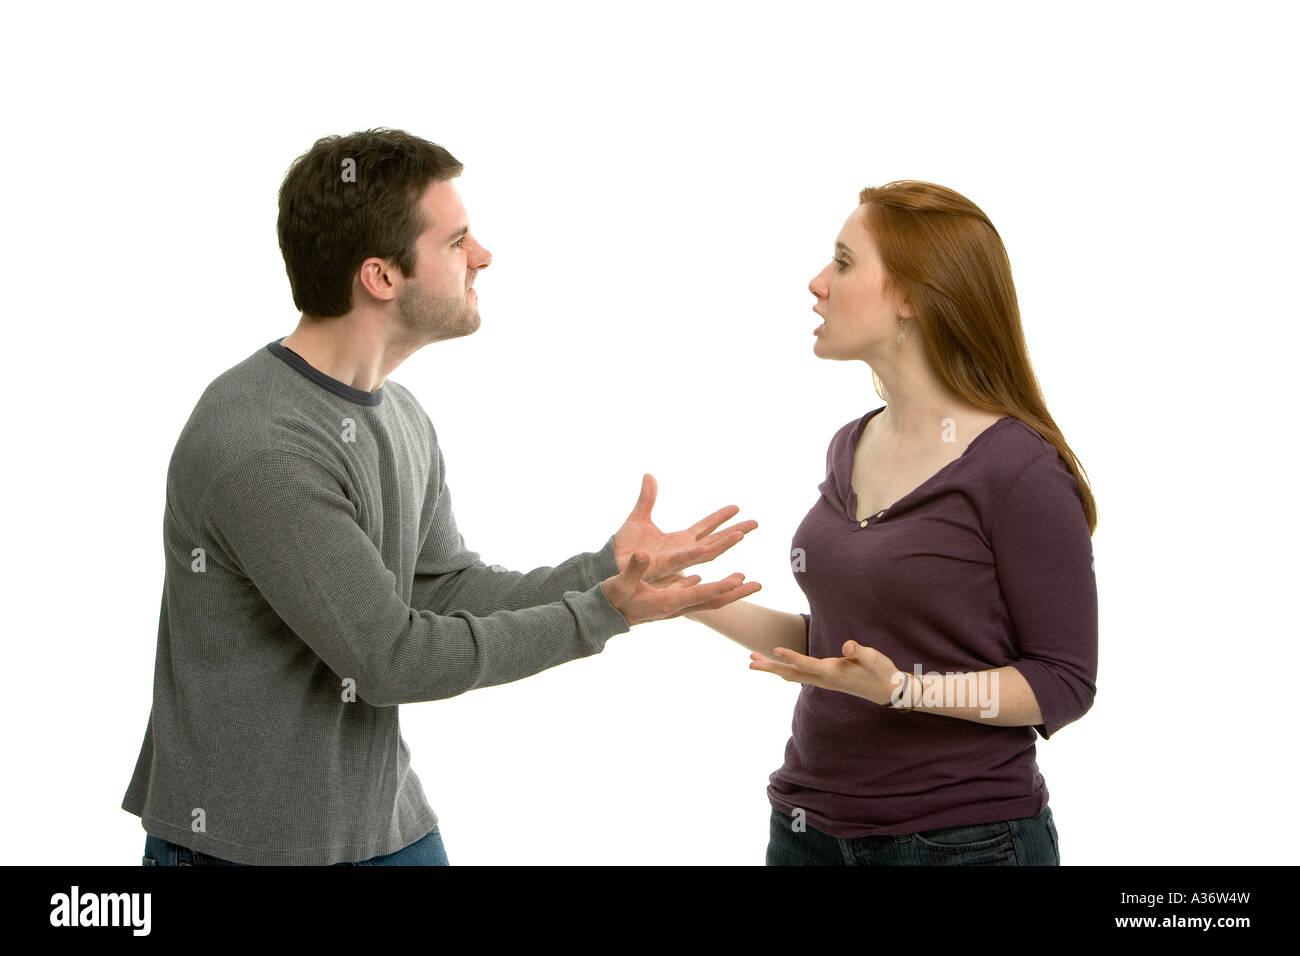 Un argument passionné fait rage entre deux jeunes amants avec voix posée et frustration Banque D'Images